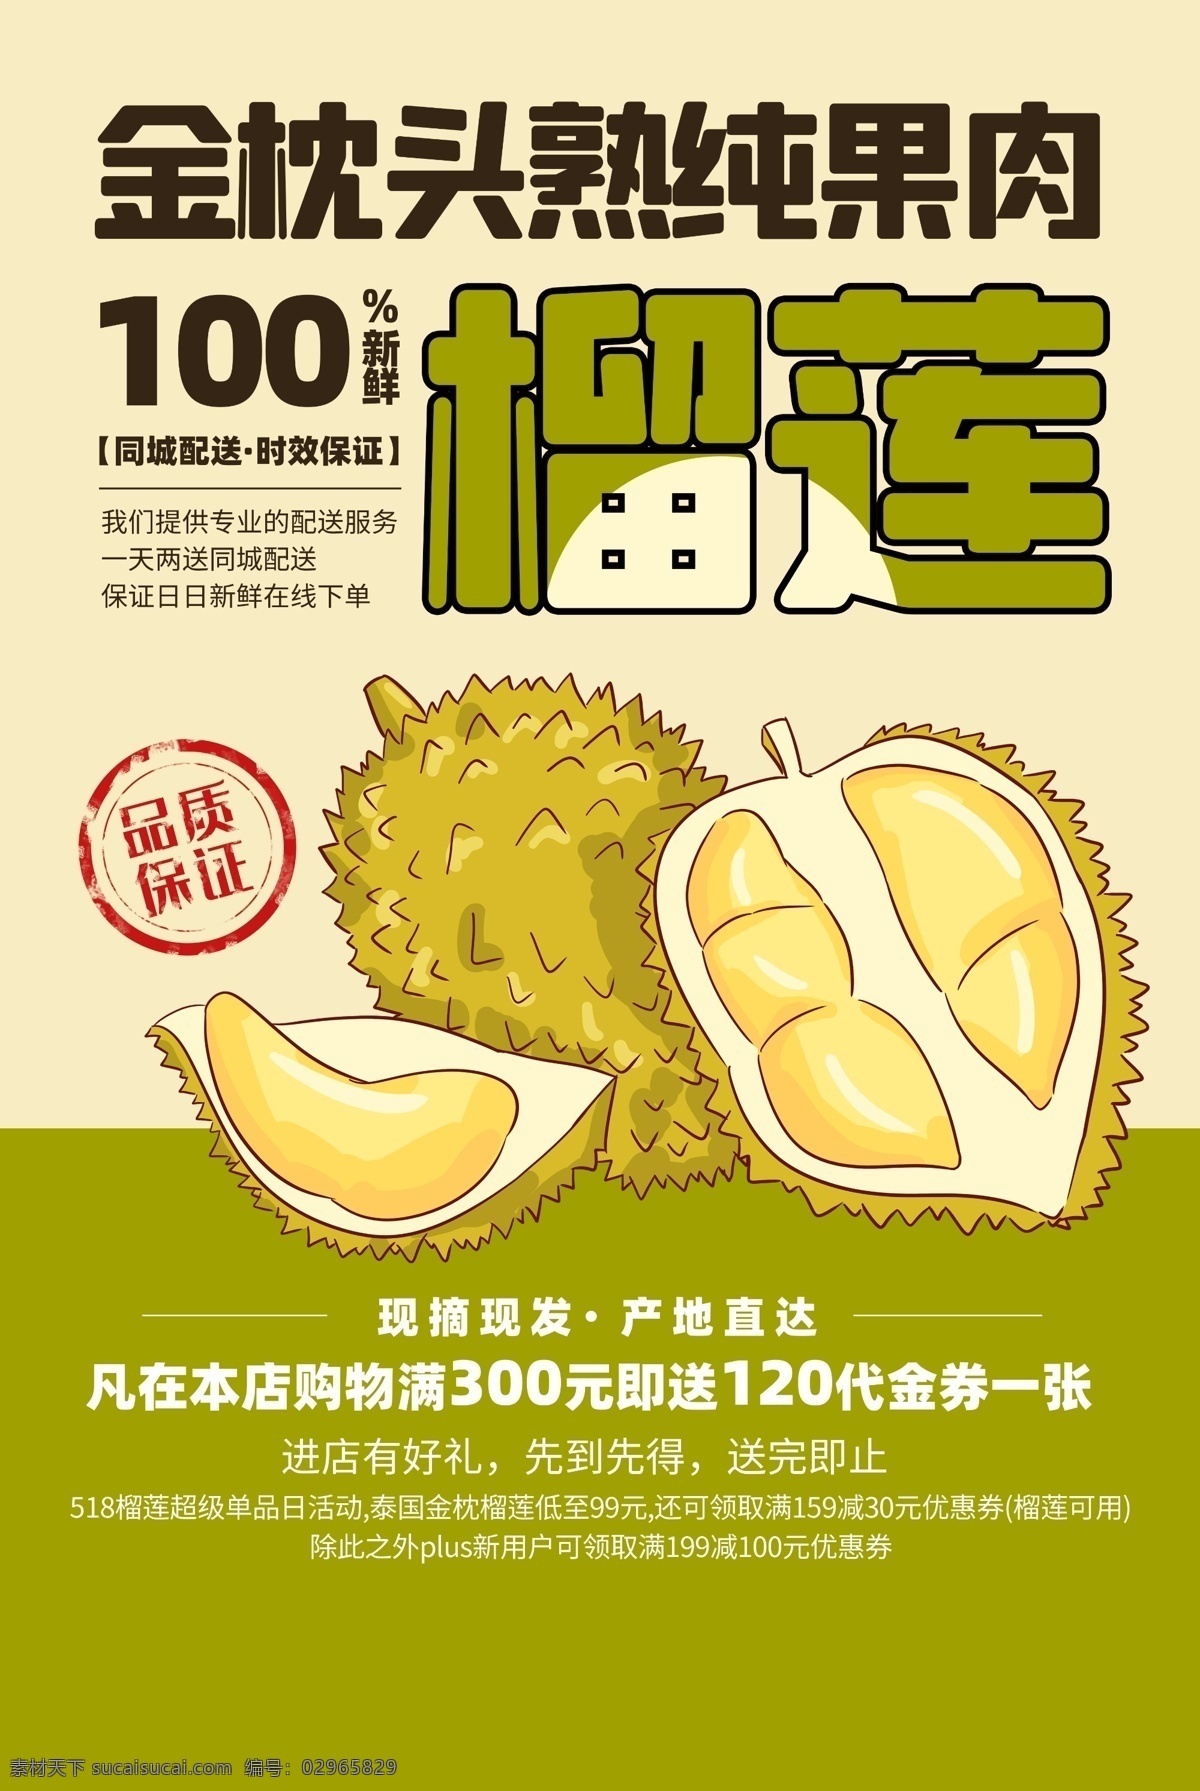 榴莲 水果 王 活动 宣传海报 素材图片 水果之王 宣传 海报 餐饮美食 类